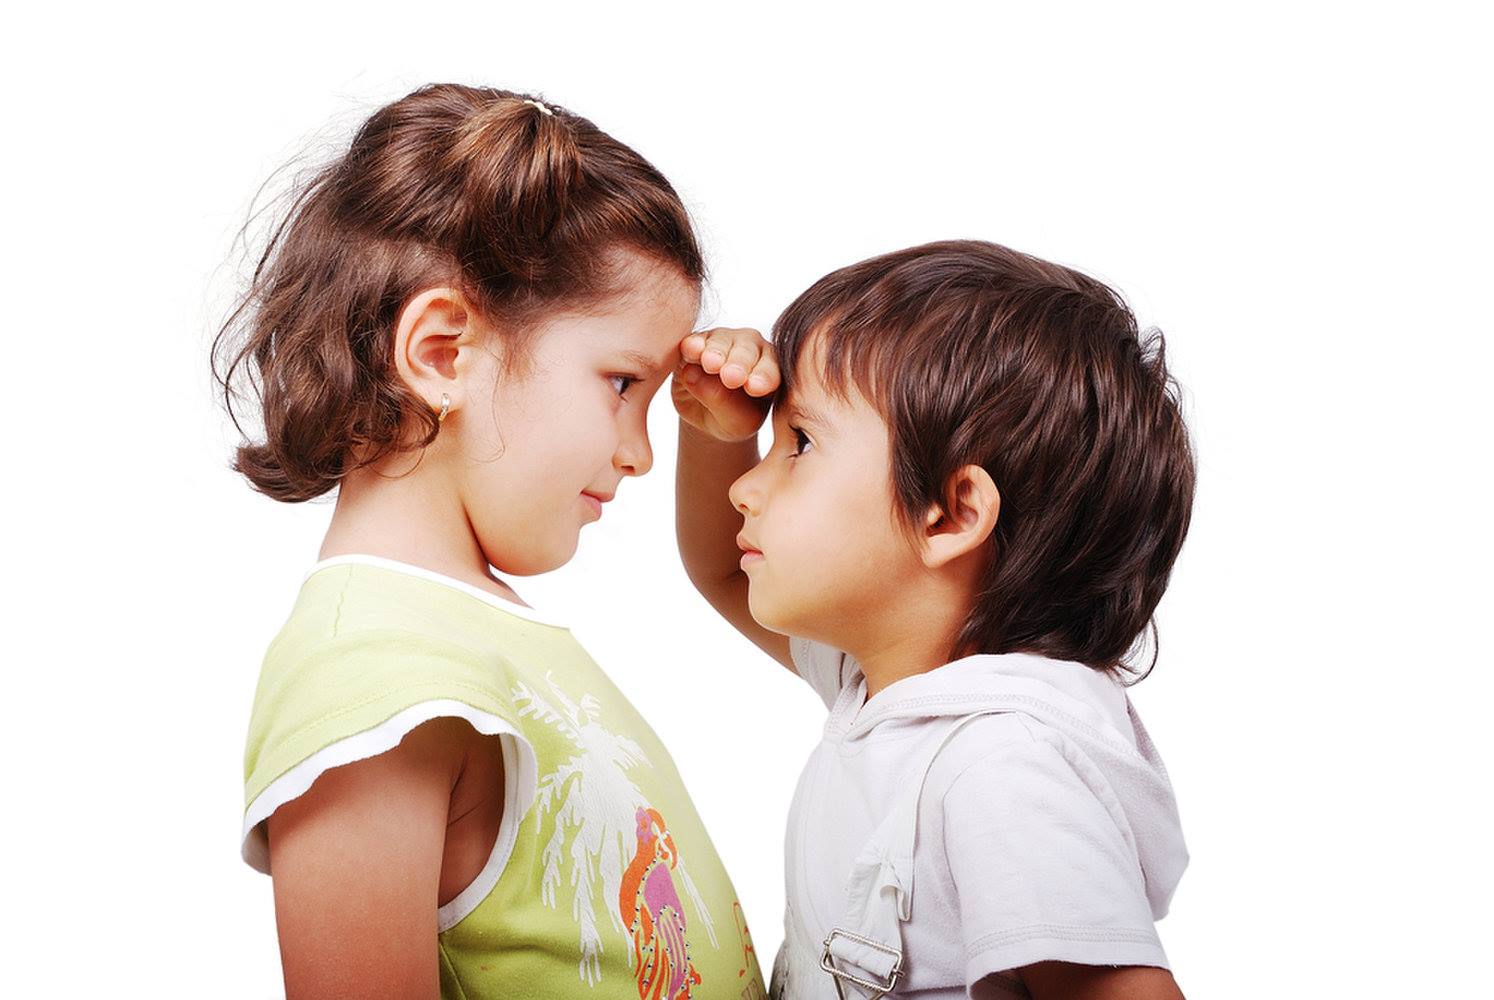   Trẻ còi cọc chậm lớn cũng có thể là dấu hiệu mất cơ dễ nhận thấy  